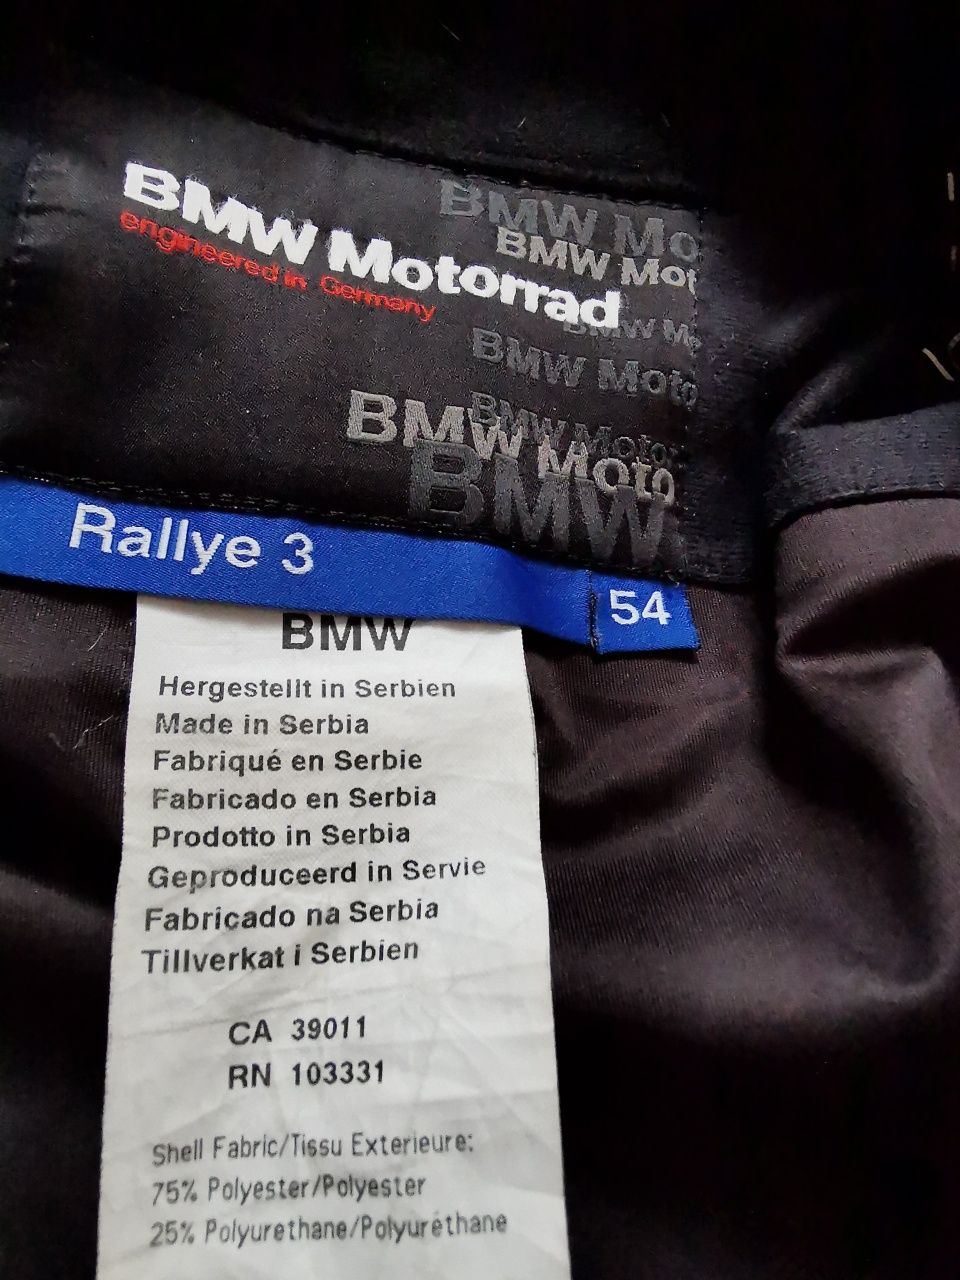 Bmw Motorrad Rallye 3 komplet motocyklowy kurtka + spodnie 54/52